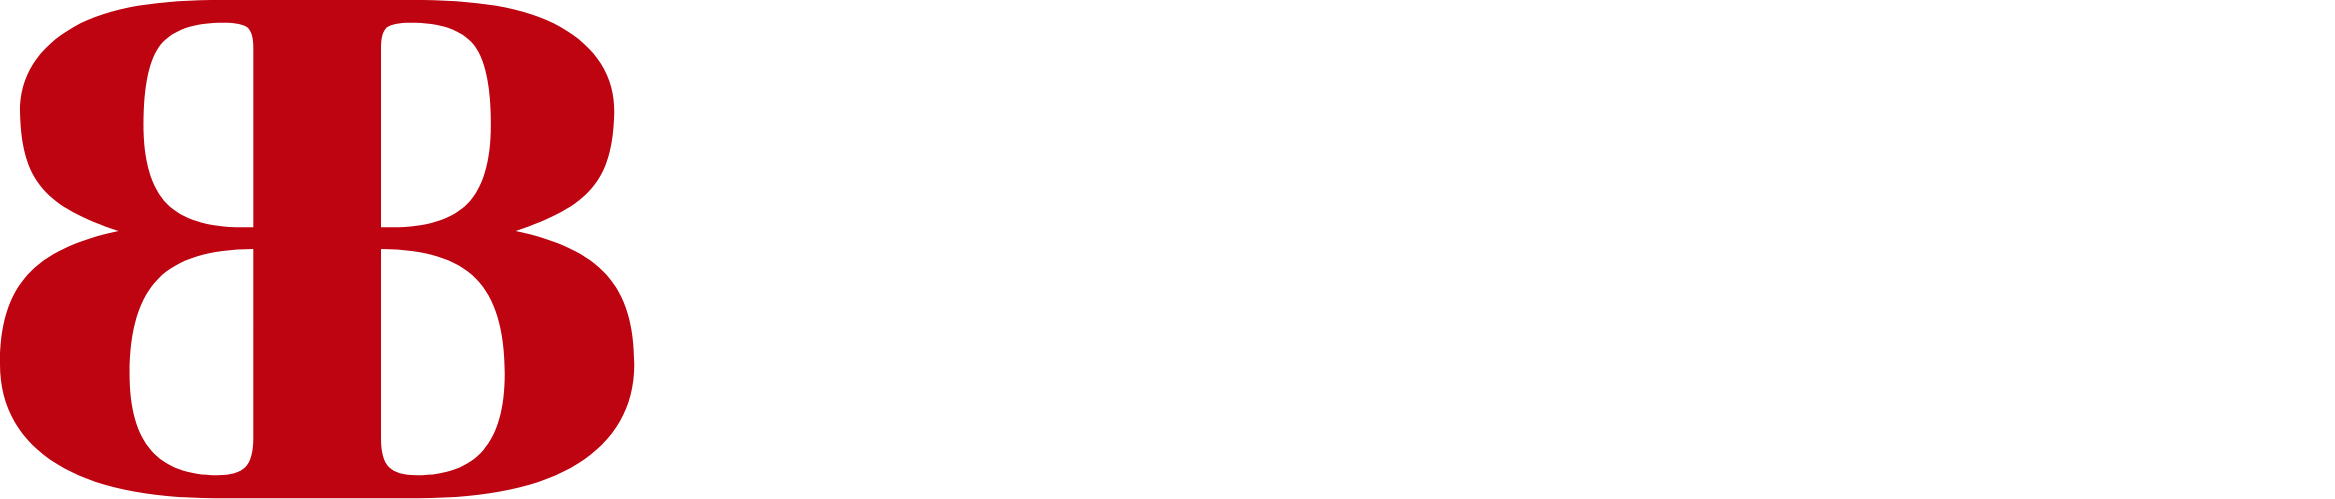 Banco del Bajío Logo groß für dunkle Hintergründe (transparentes PNG)